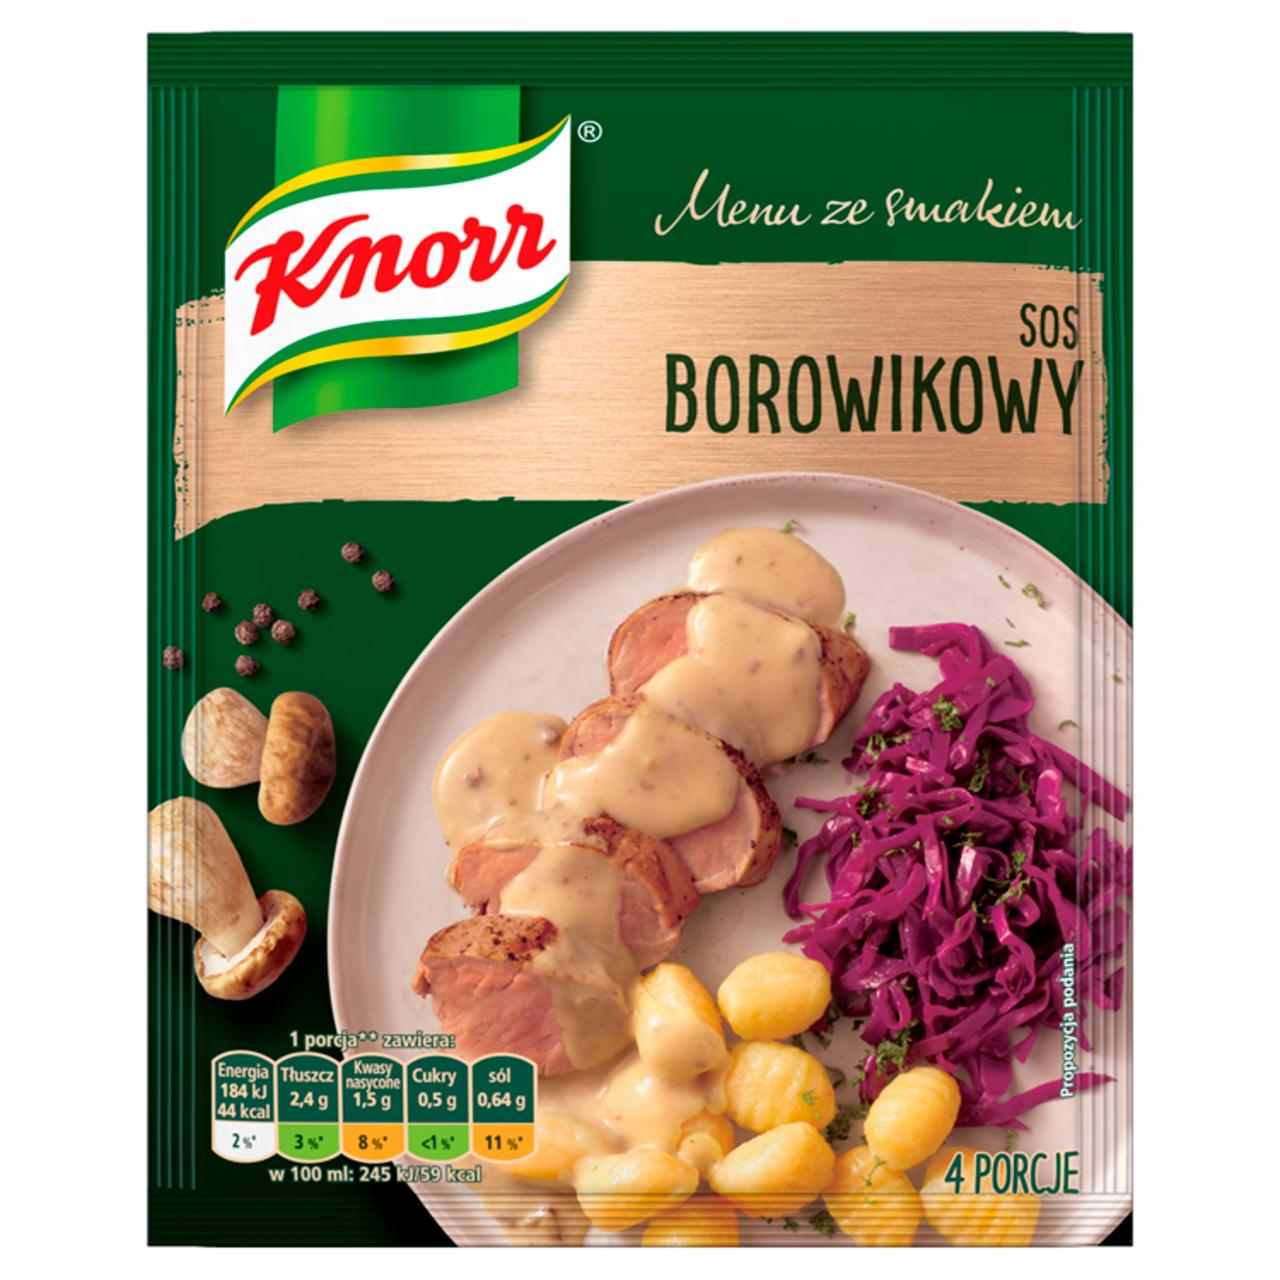 Zdjęcia - Knorr Menu ze smakiem Sos borowikowy 37 g